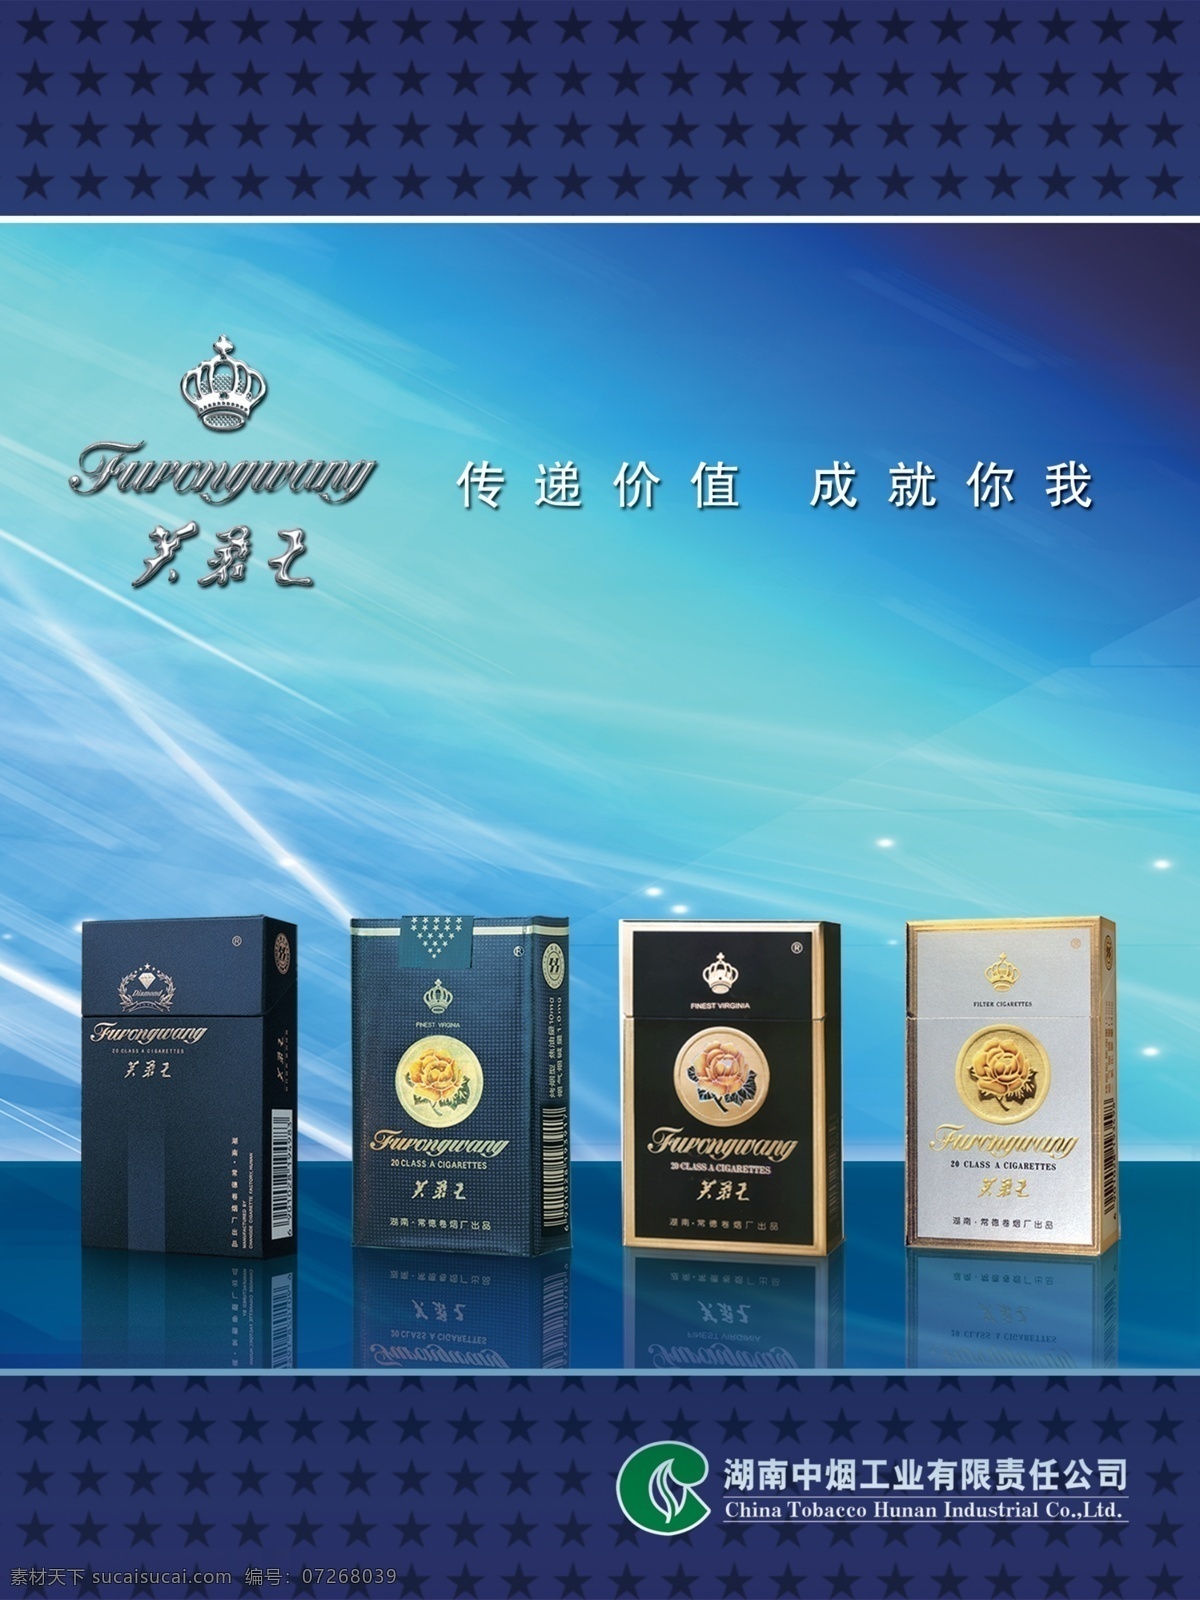 芙蓉王香烟 标志 蓝色烟盒 银白色烟盒 光 渐变 背景设计 文字排版 广告设计模板 源文件